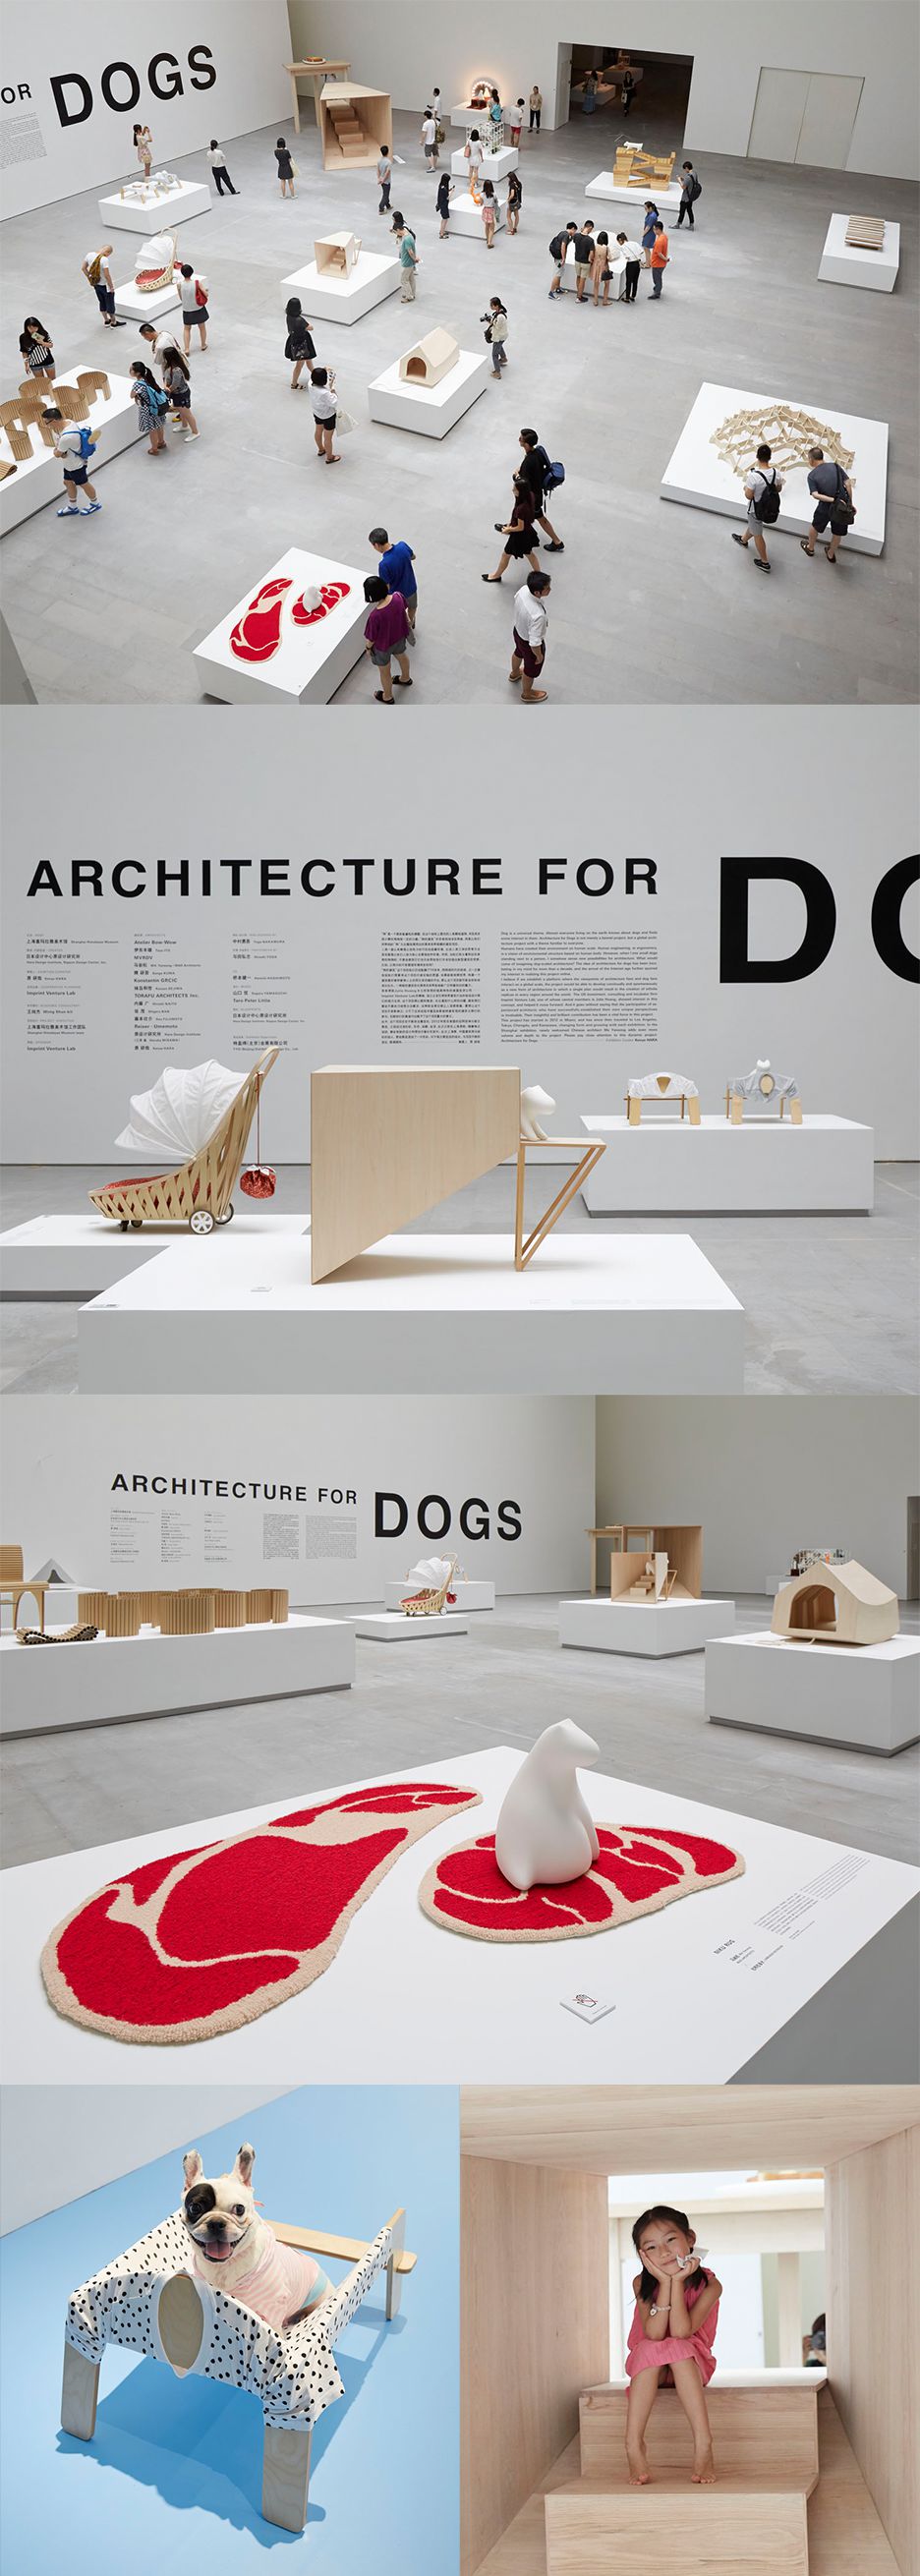 犬のための建築、中国「上海ヒマラヤ美術館」に巡回